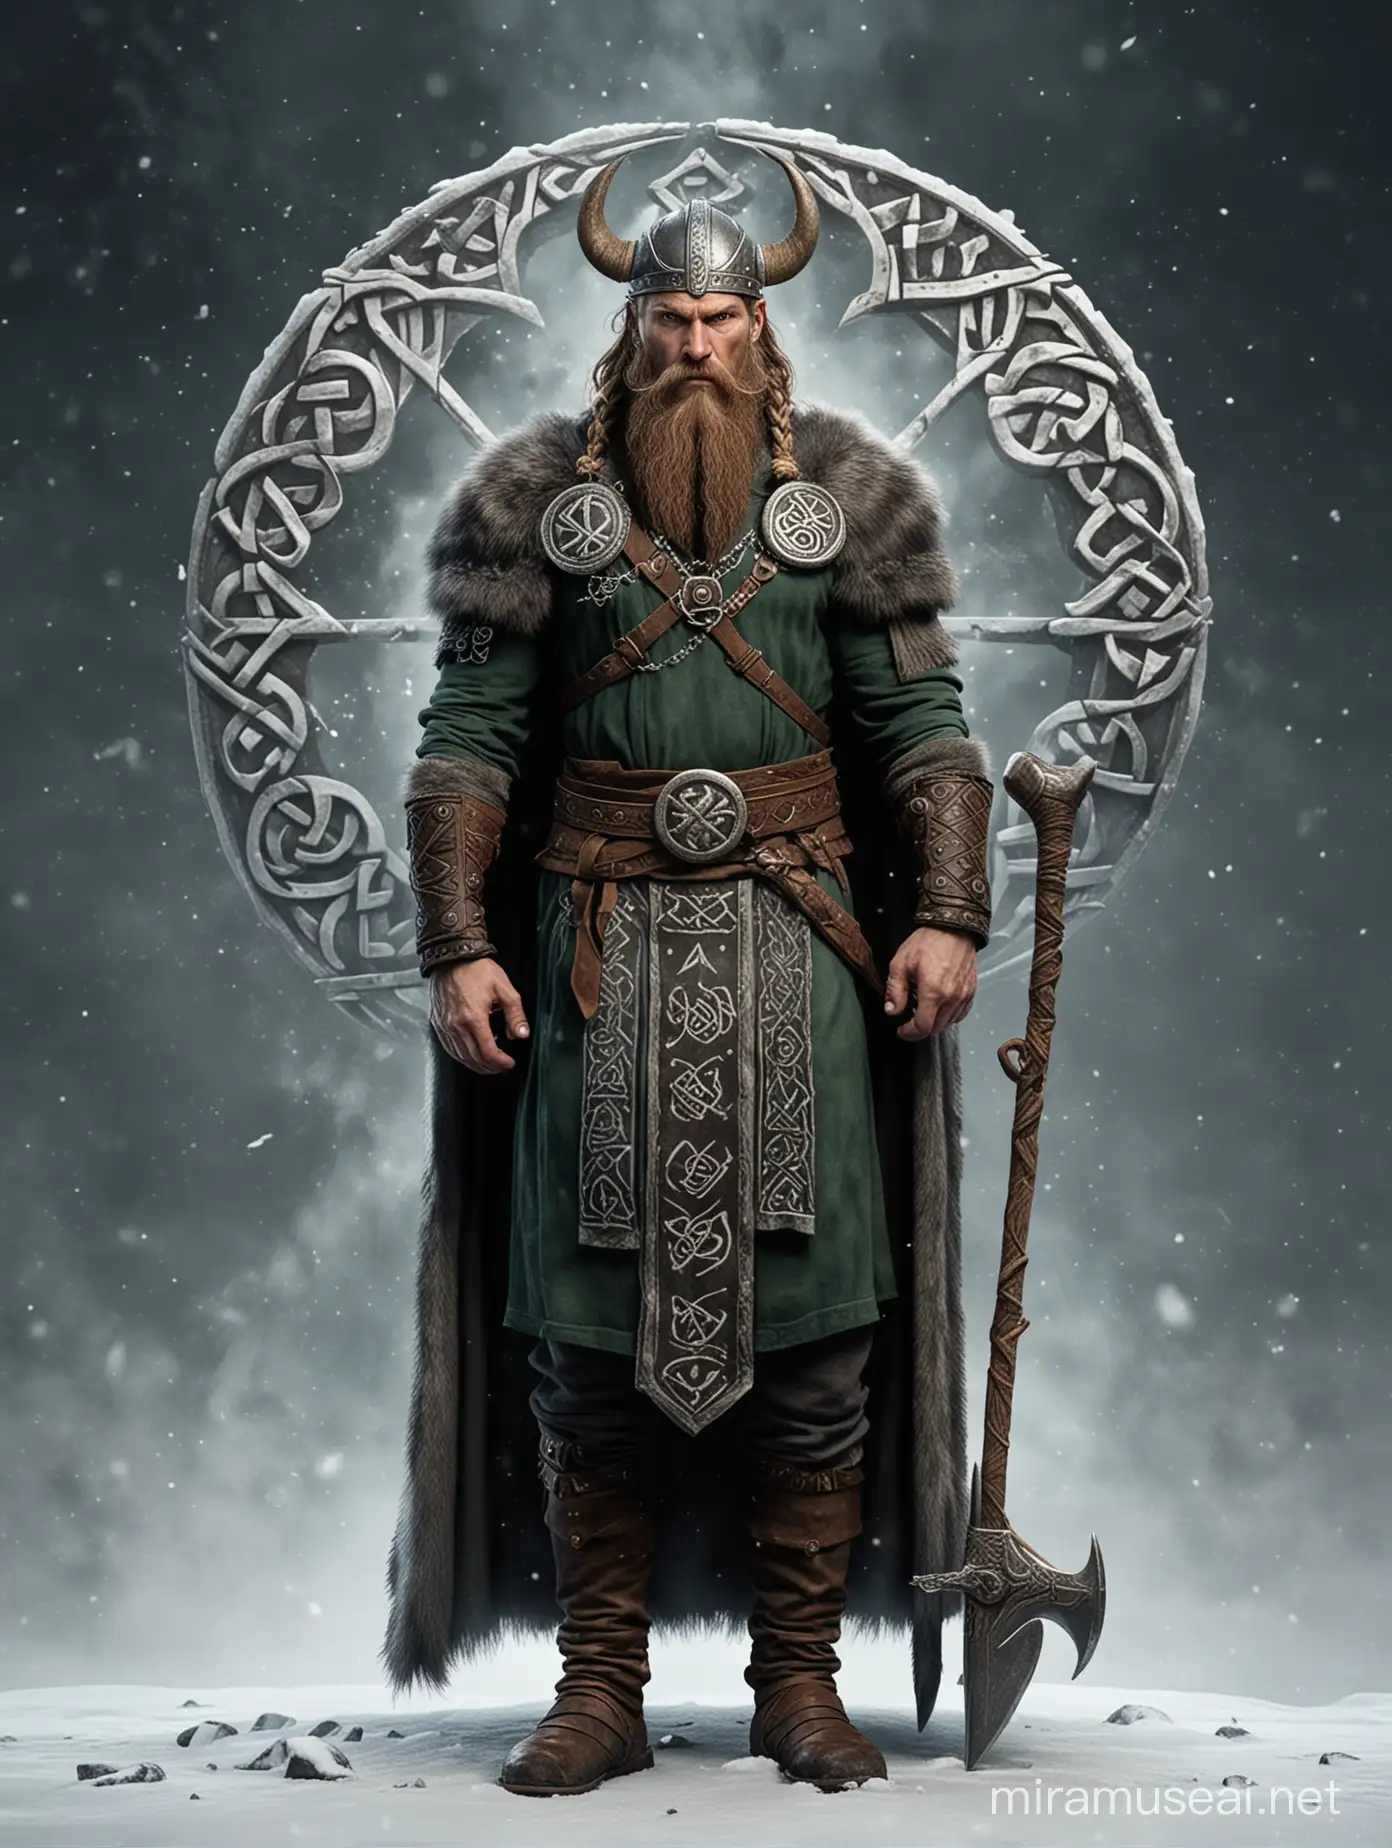 viking god balder character full body winter rune and celtics symbols